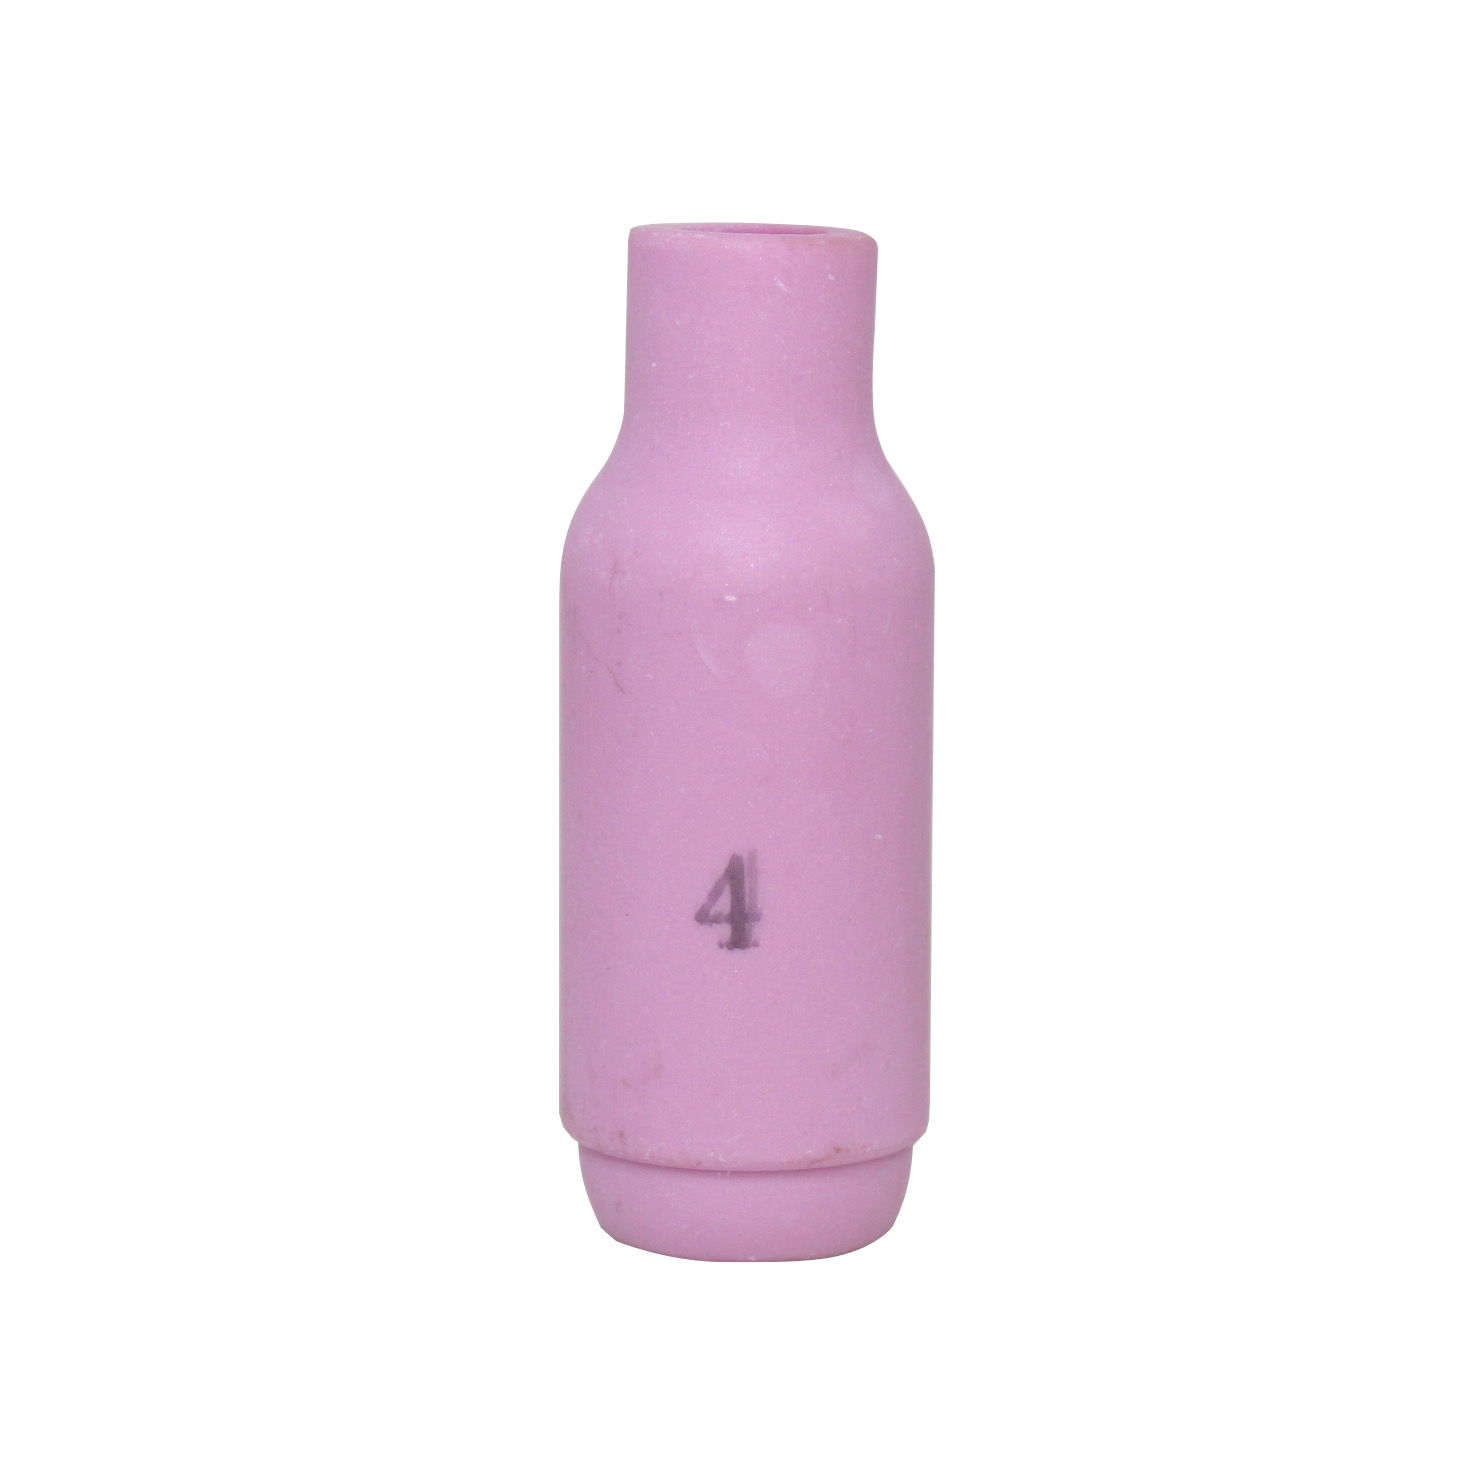 Bocal Ceramica HW26 TE-430 TN-26 N°4 6,5mm 10N50